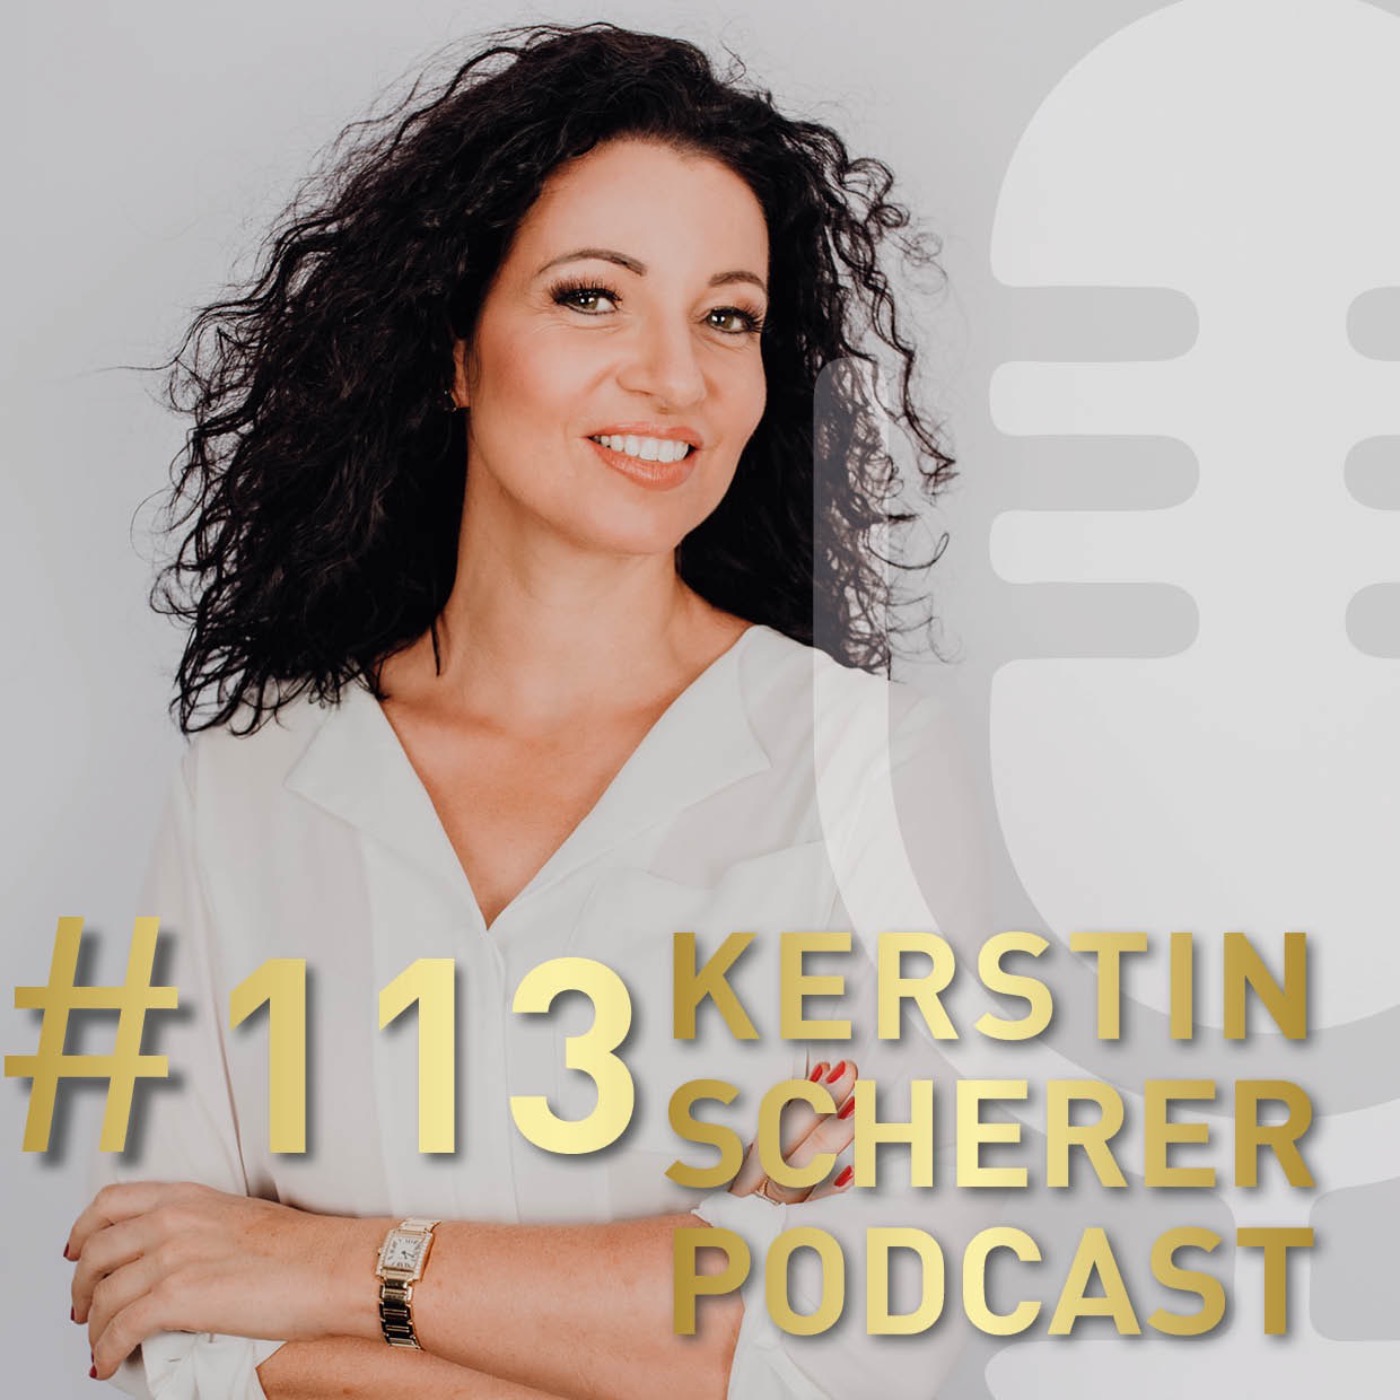 # 113 Business Spirit - Kerstin Scherer